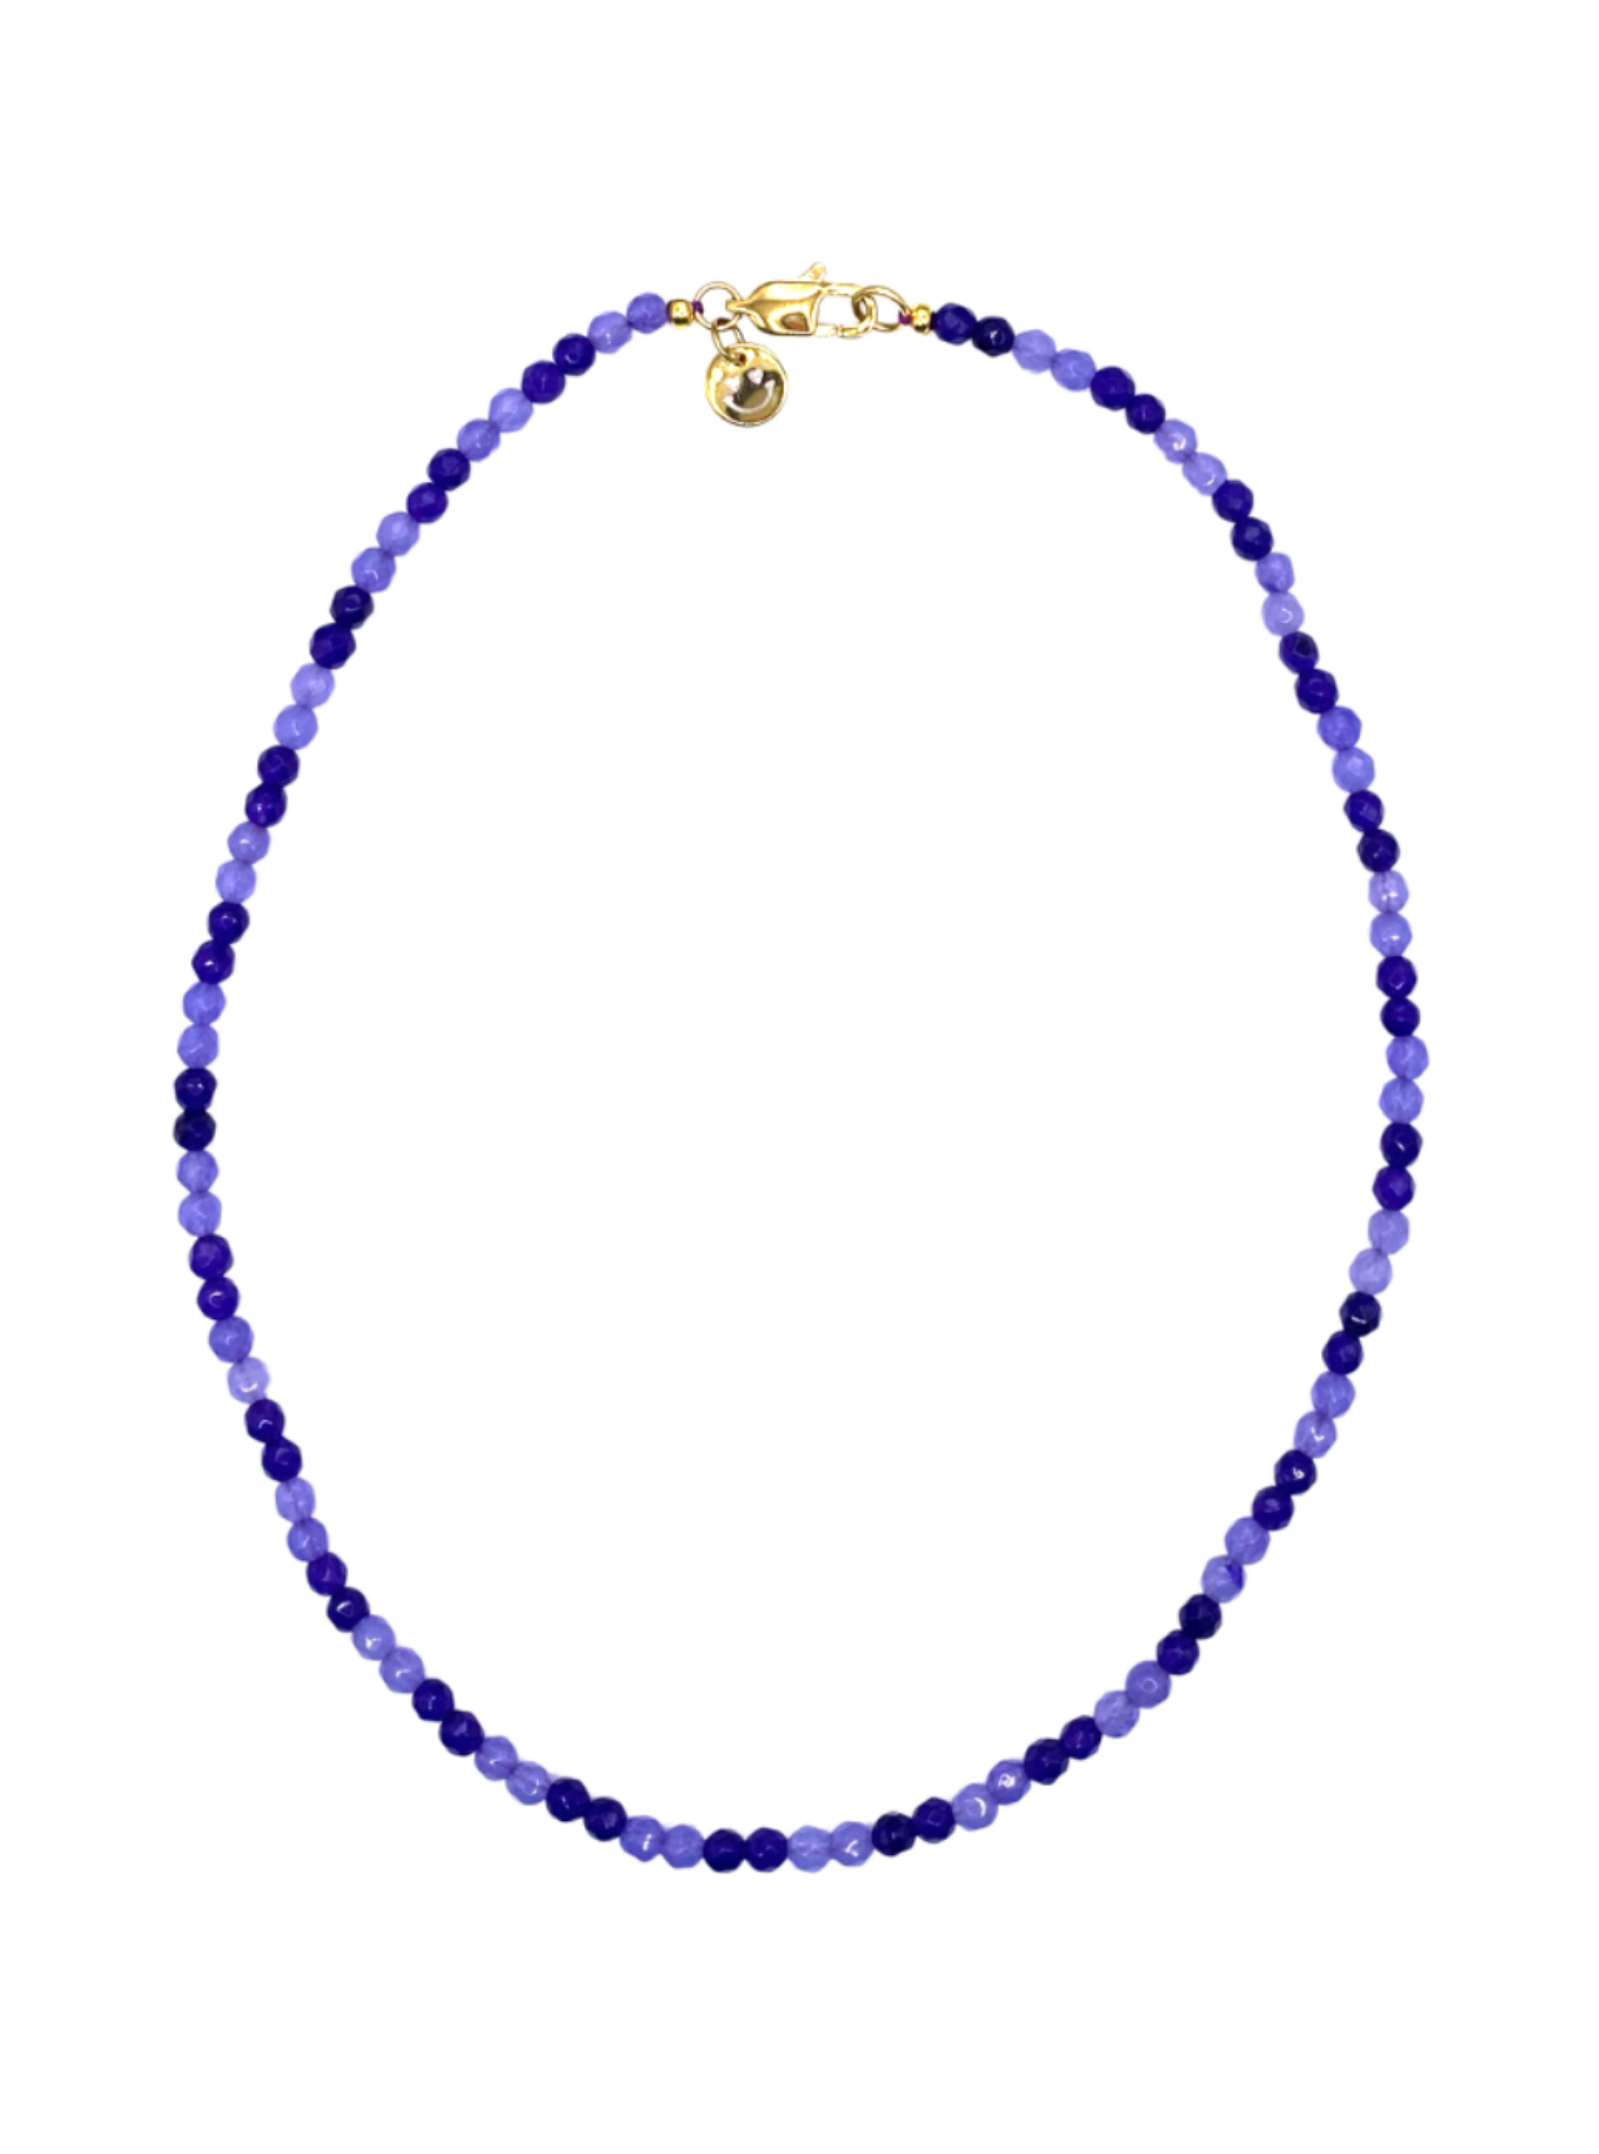 Roger Double Purple Necklace